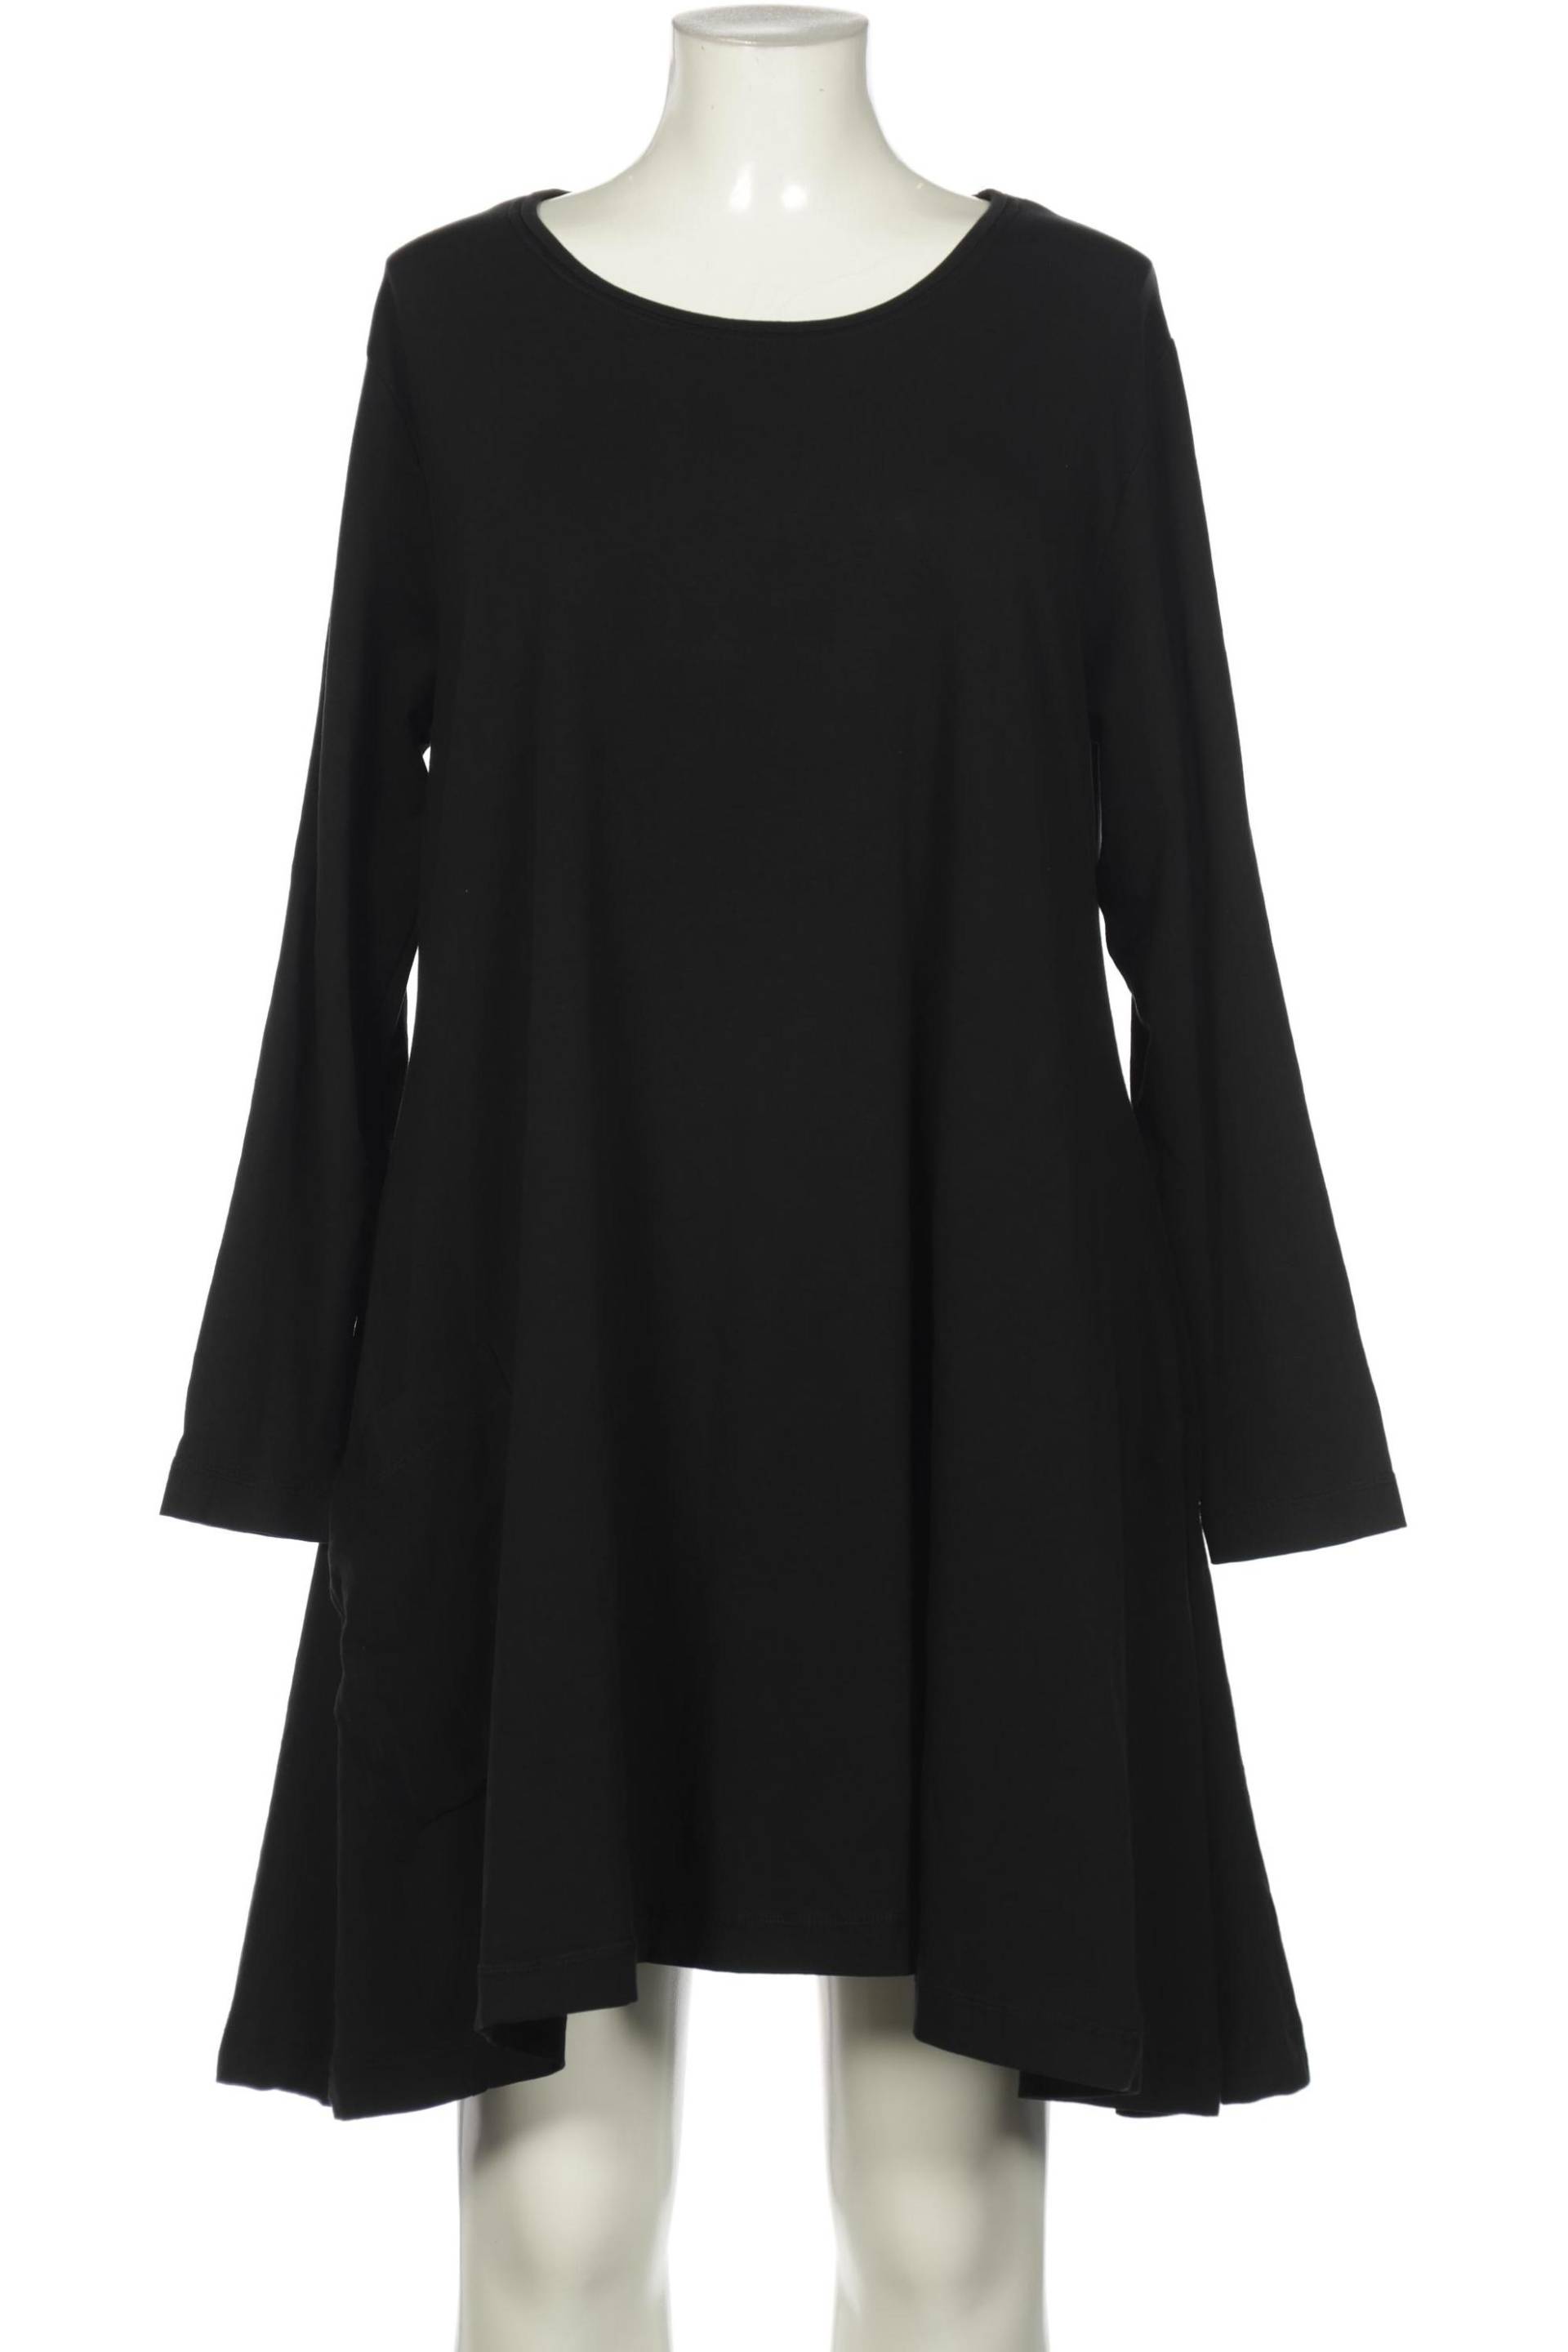 Deerberg Damen Kleid, schwarz, Gr. 44 von Deerberg